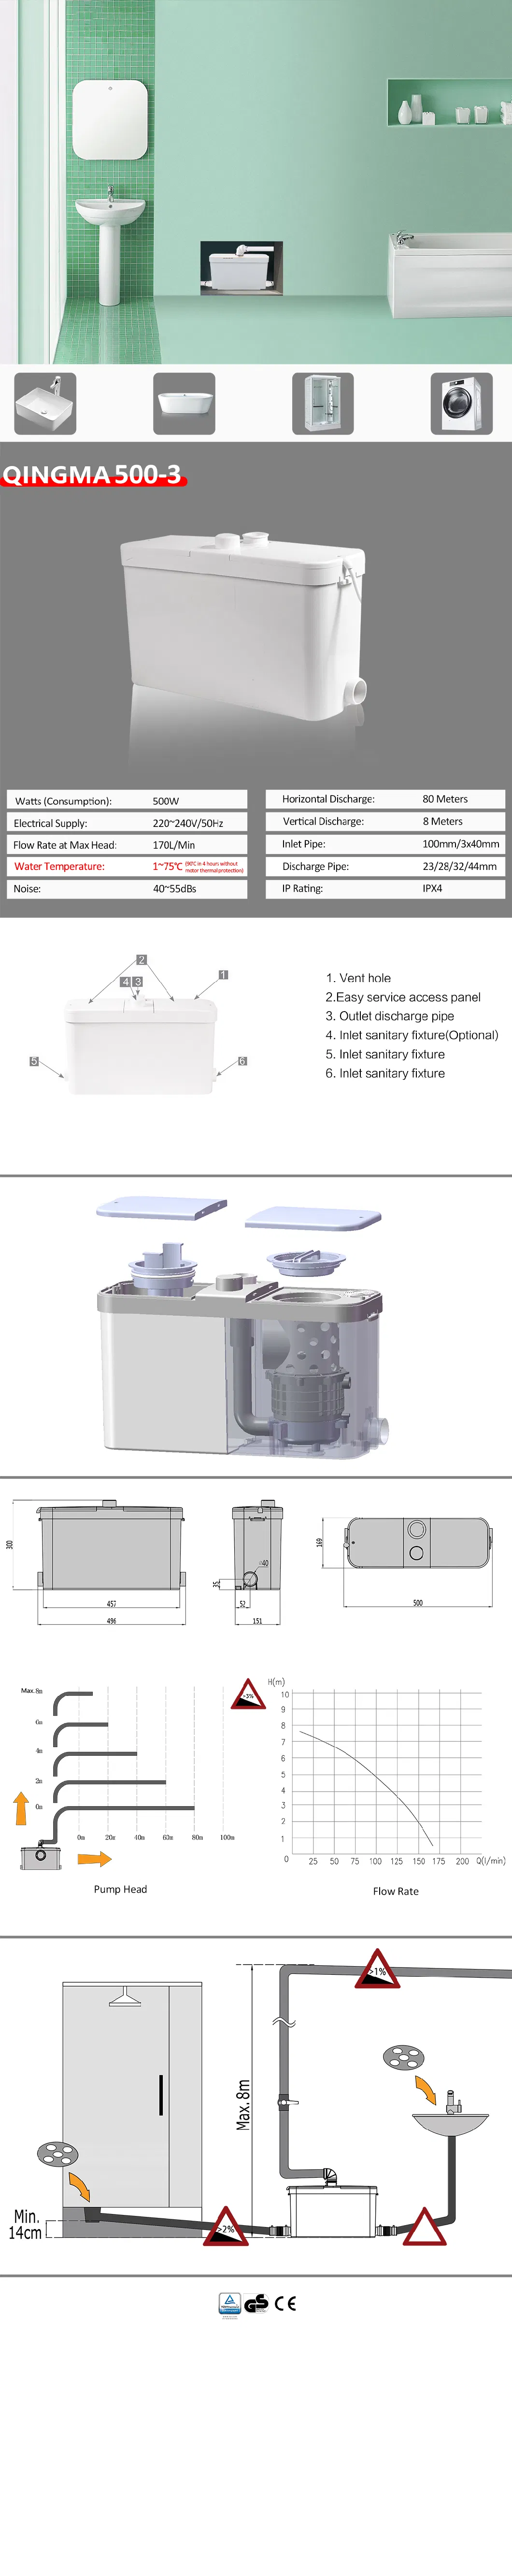 Qingma 500-3 Sanitary Sewage Waste Water Macerator Pump Manufacture